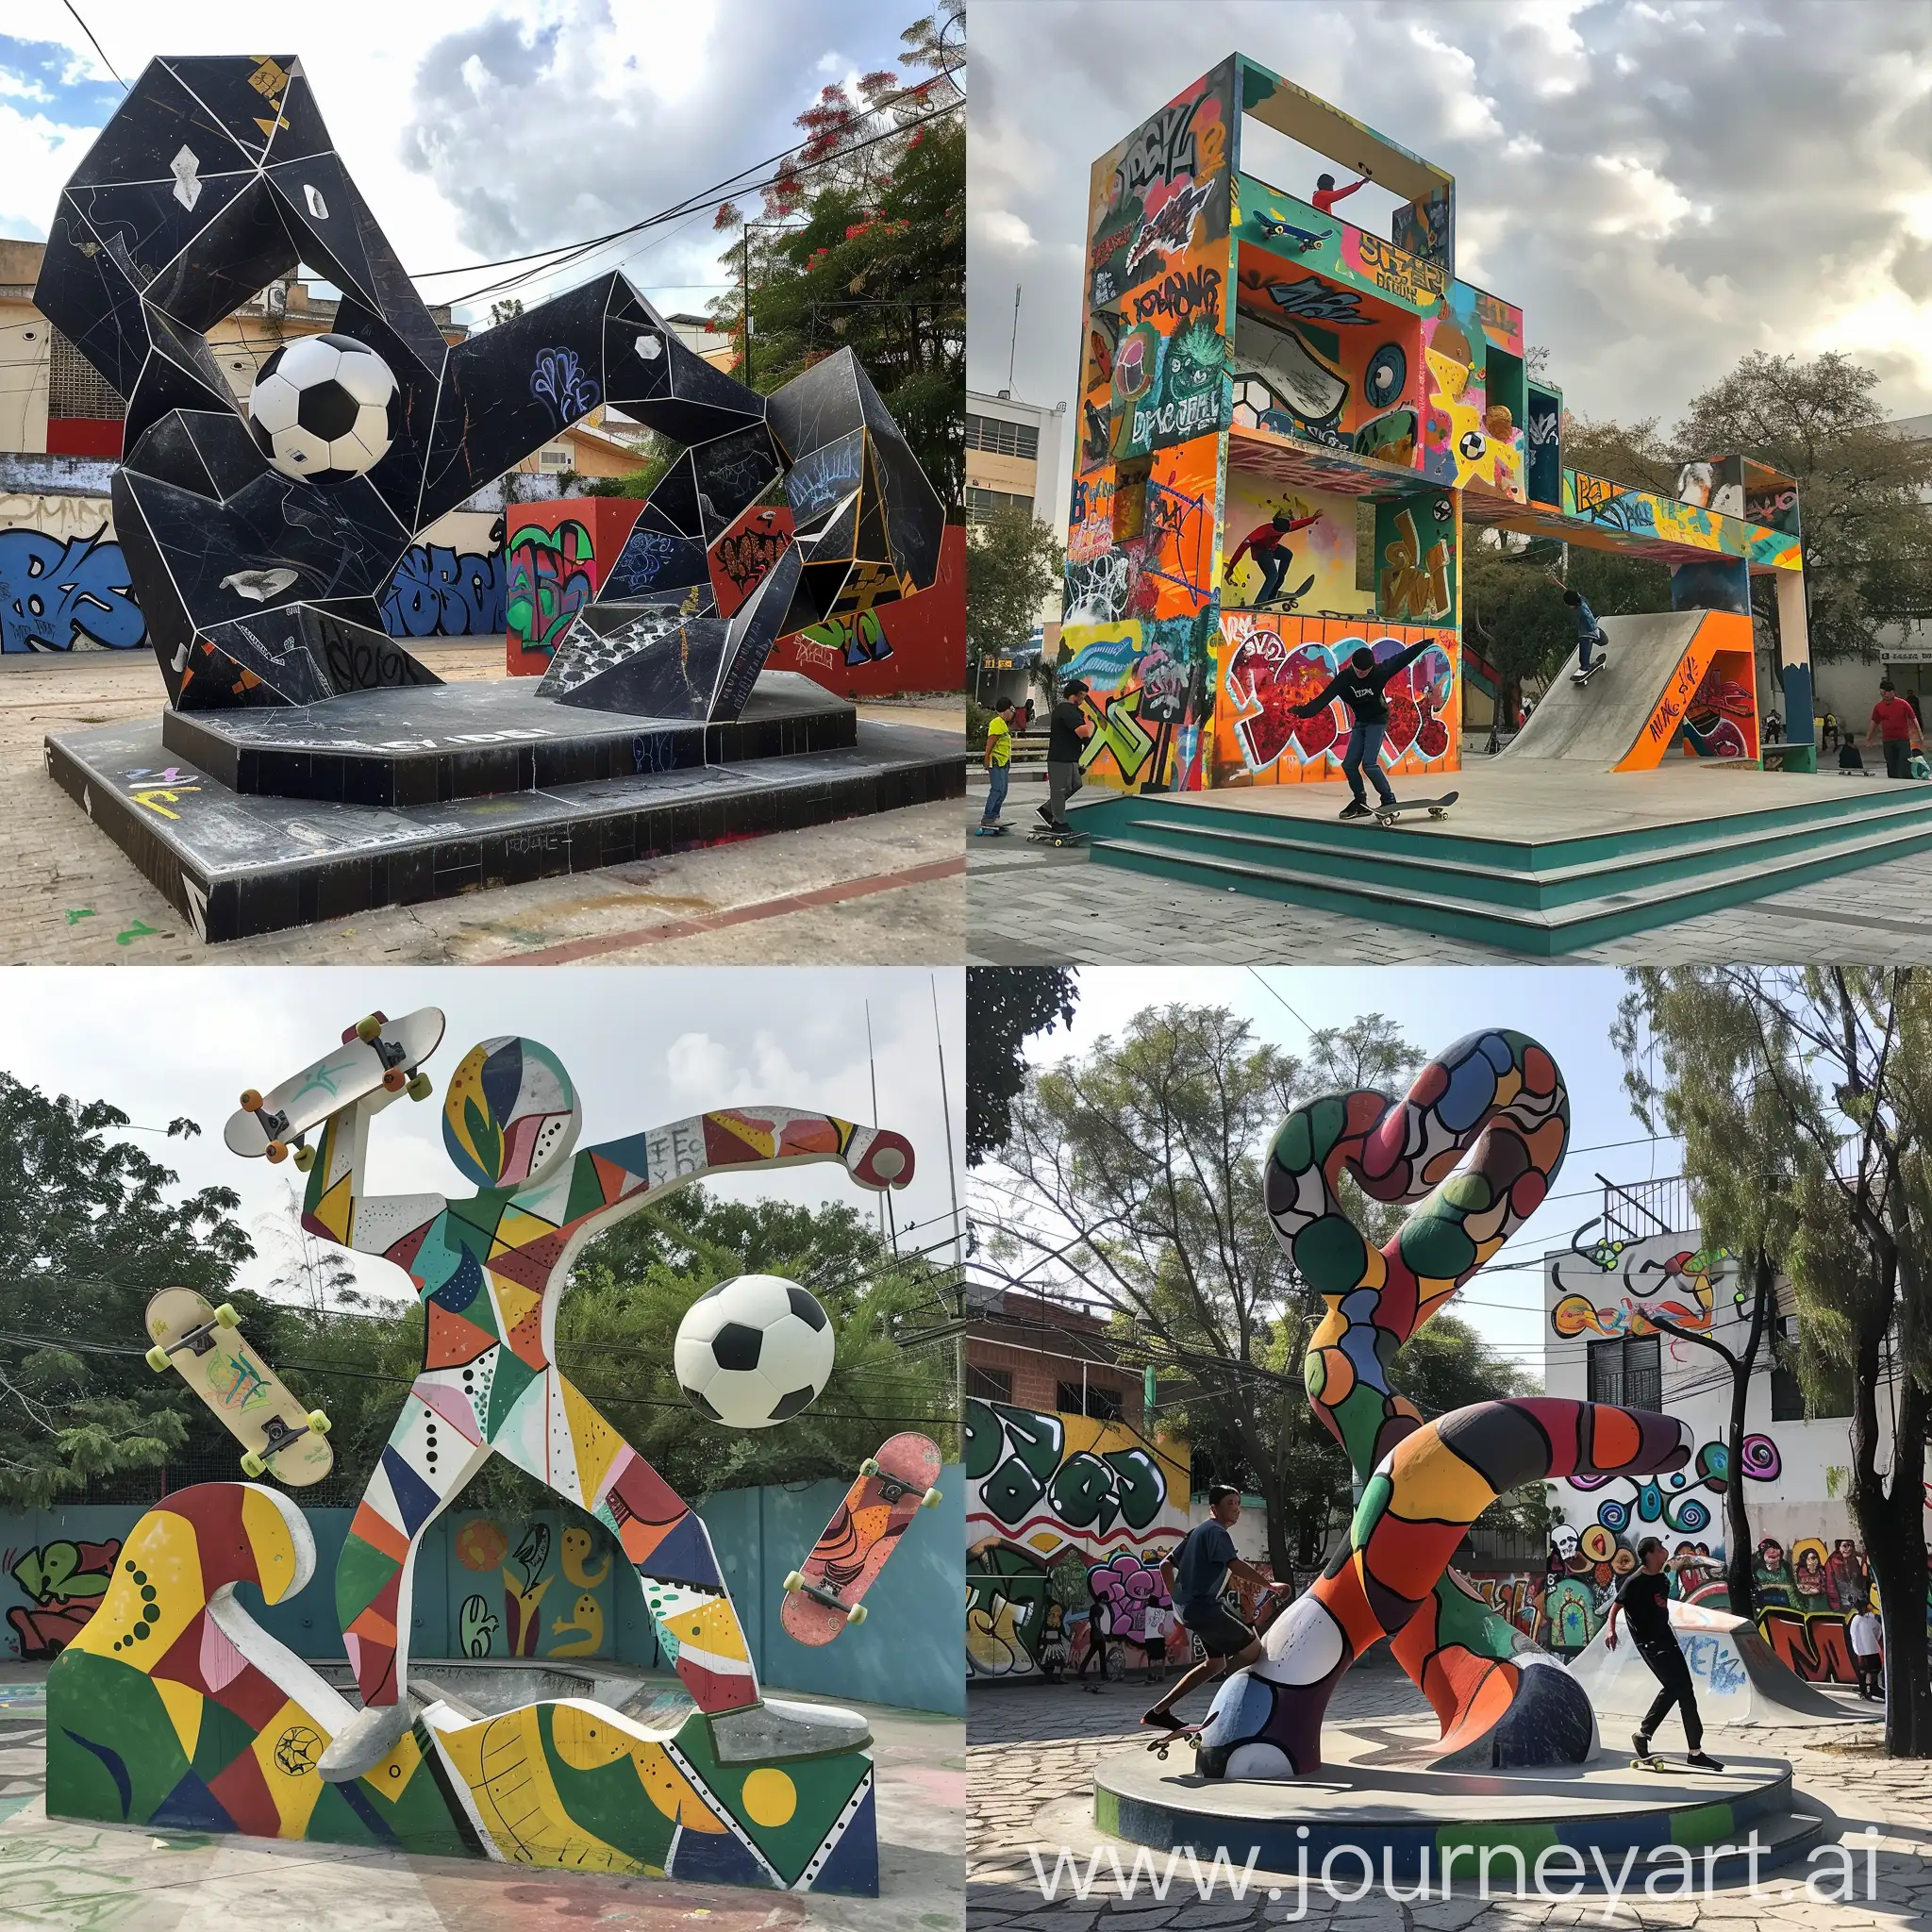 Dynamic-Recreation-Urban-Sculpture-Blending-Skateboarding-Soccer-Dance-and-Graffiti-Art-in-Balcones-del-4-Guadalajara